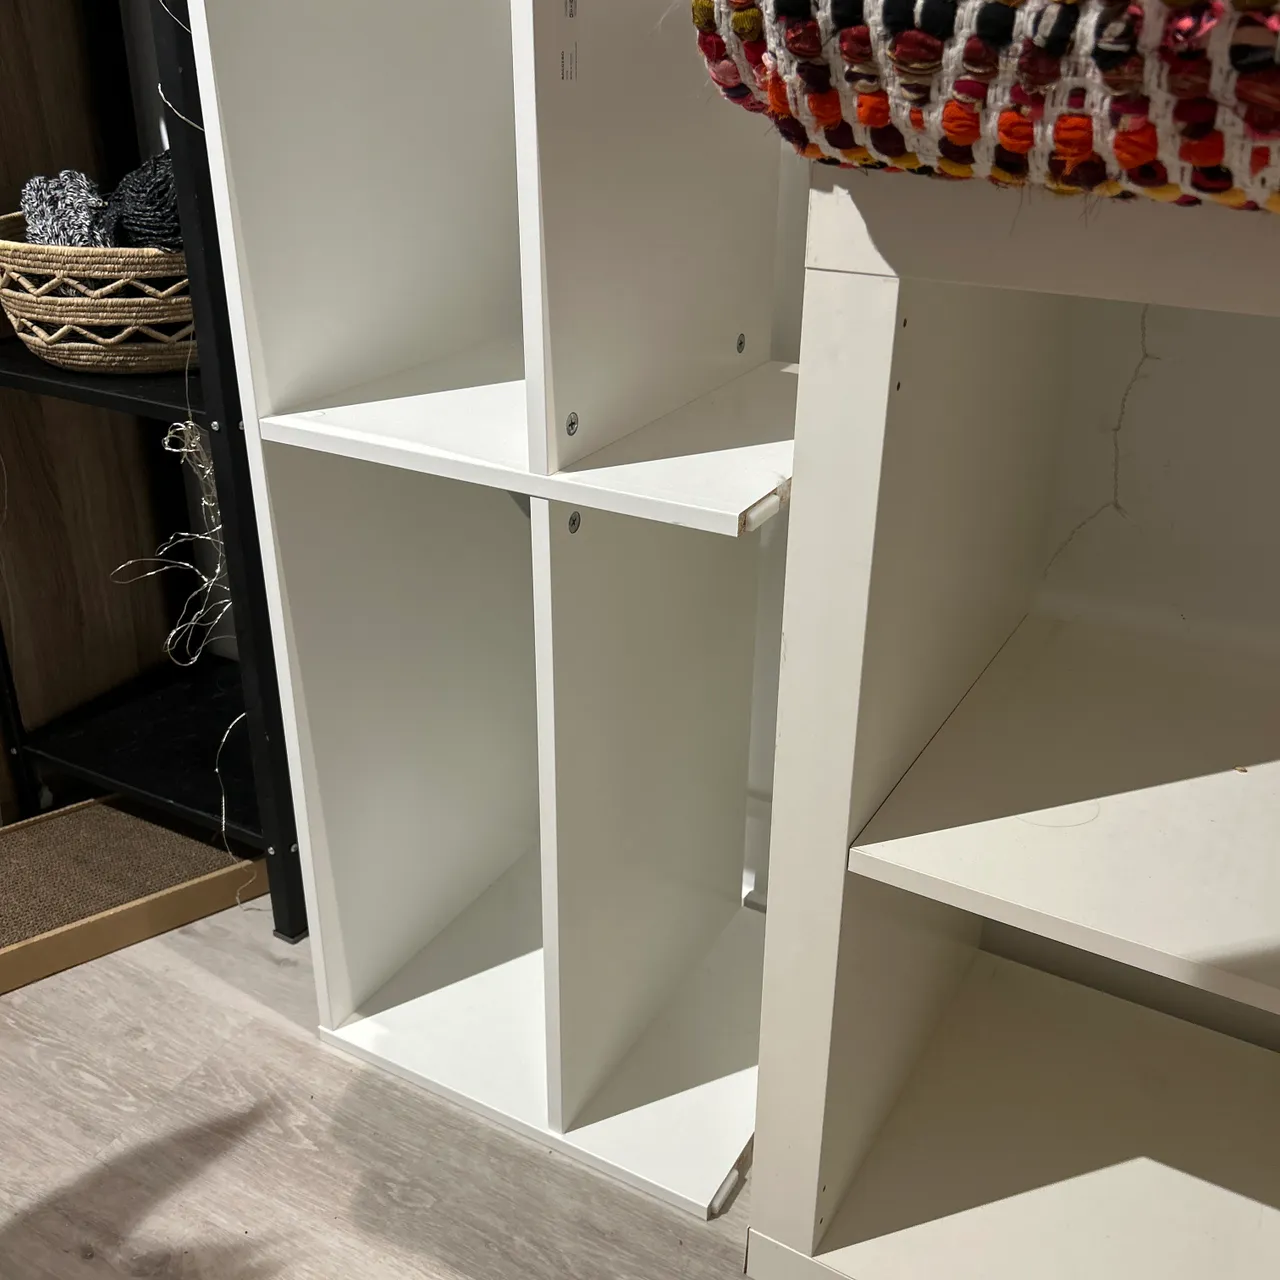 IKEA shoe shelf photo 1